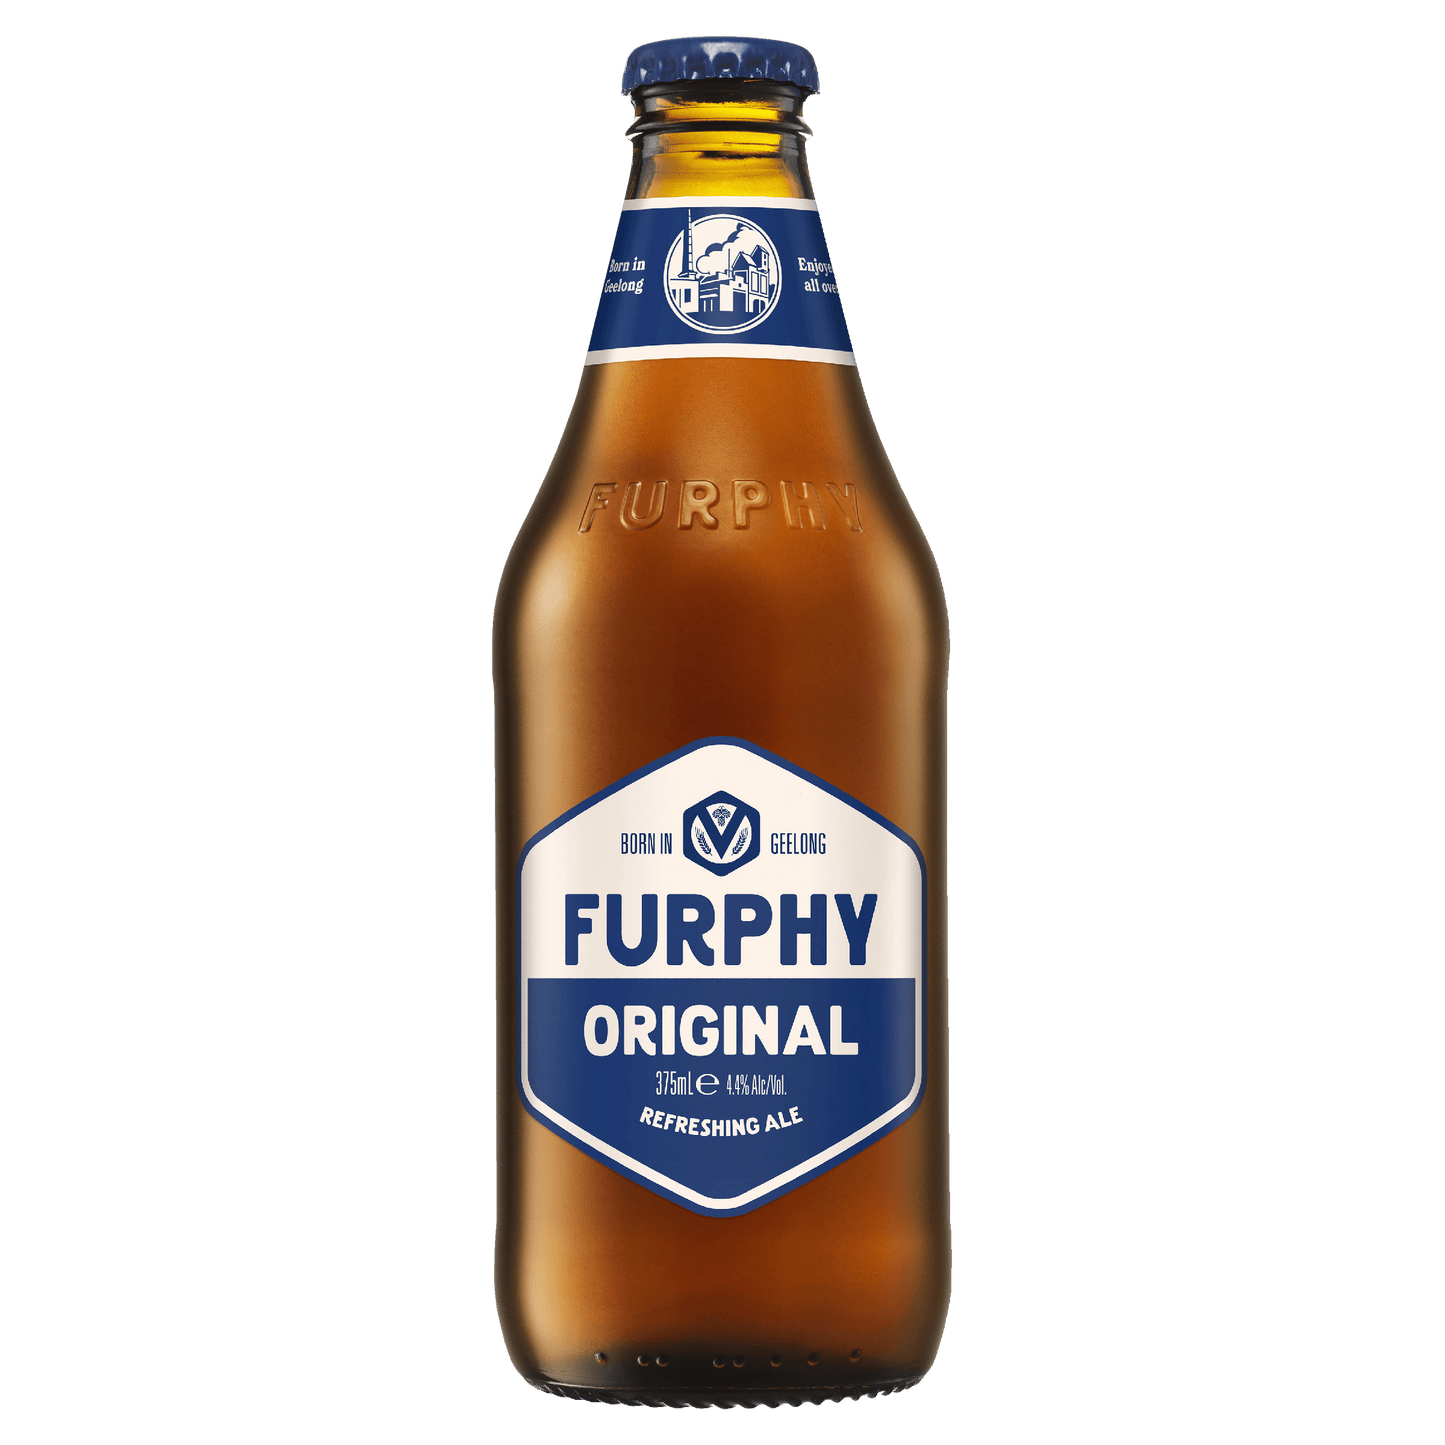 Furphy Bottles